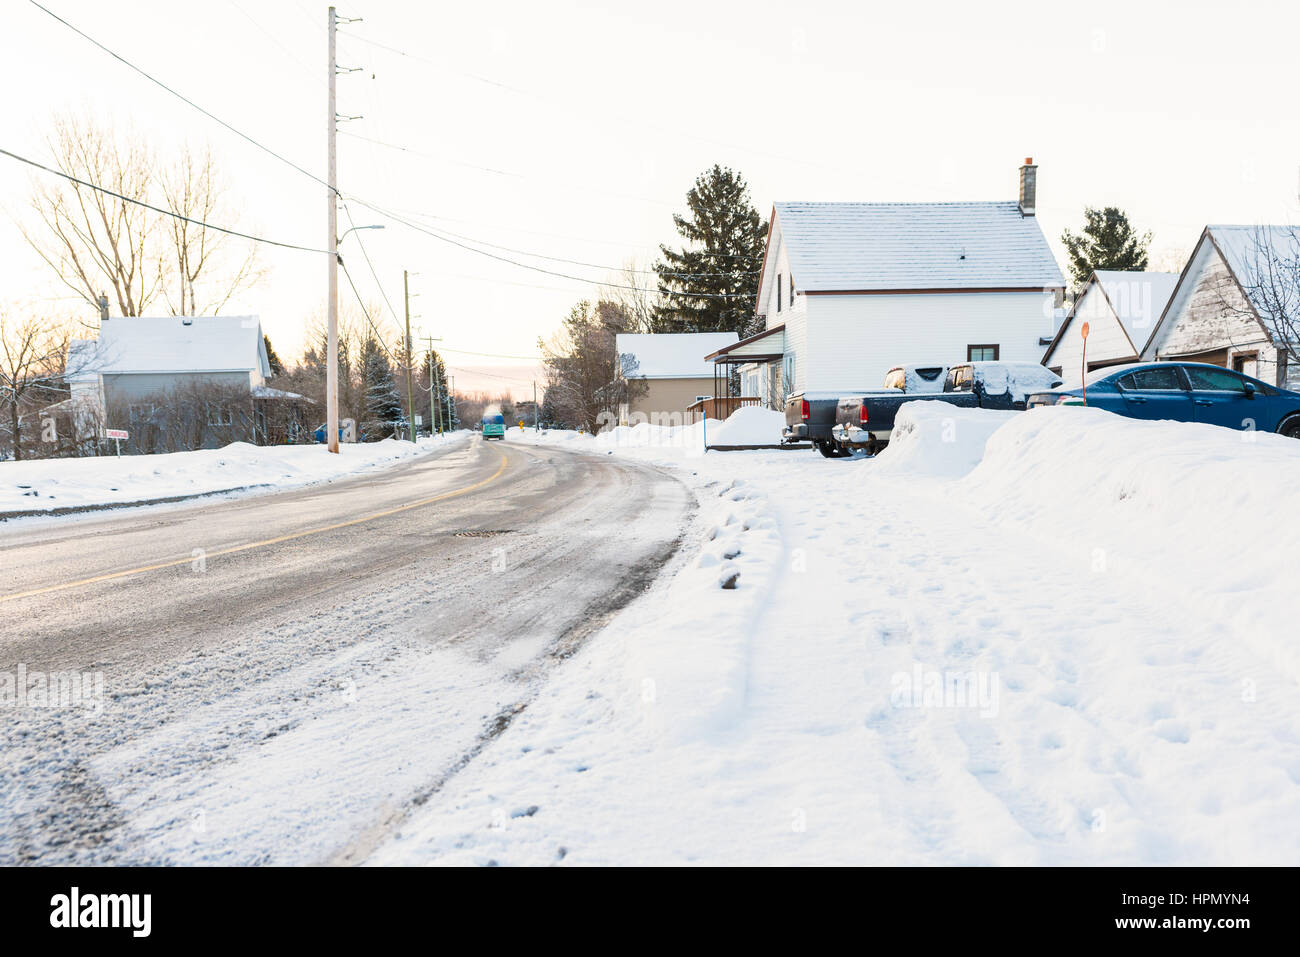 Maisons et voitures couvertes de neige dans des conditions sous-zéro dans les pays ville en hiver Banque D'Images